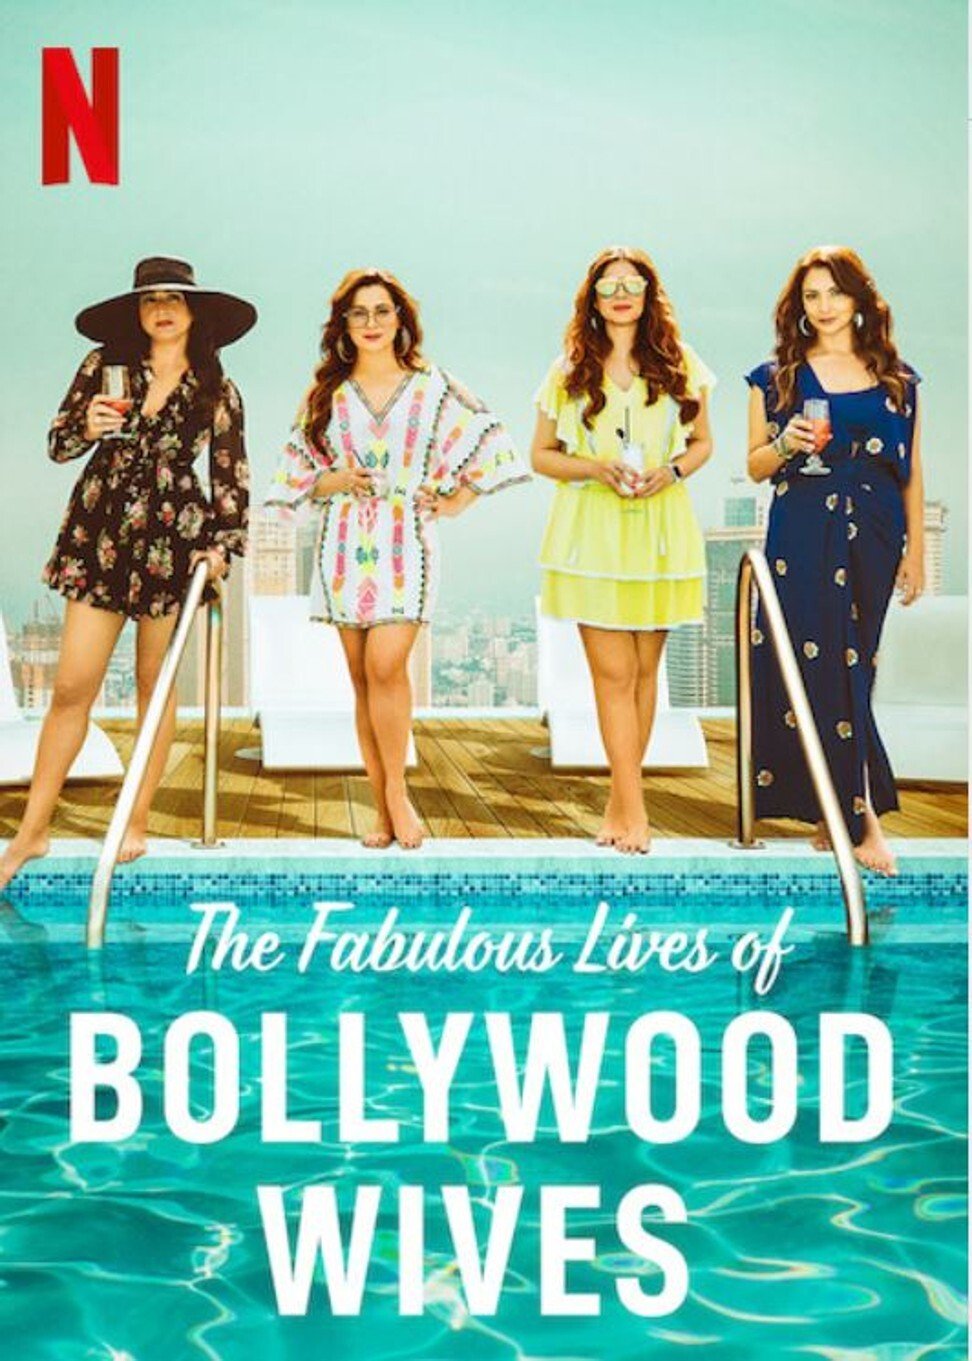 ดูหนังออนไลน์ฟรี Fabulous Lives of Bollywood Wives Season 1 Ep07 แฟบูลูส ไลฟ์ ออฟ บอลลีวู๊ด ไวส์ท ปี1 ตอนที่7